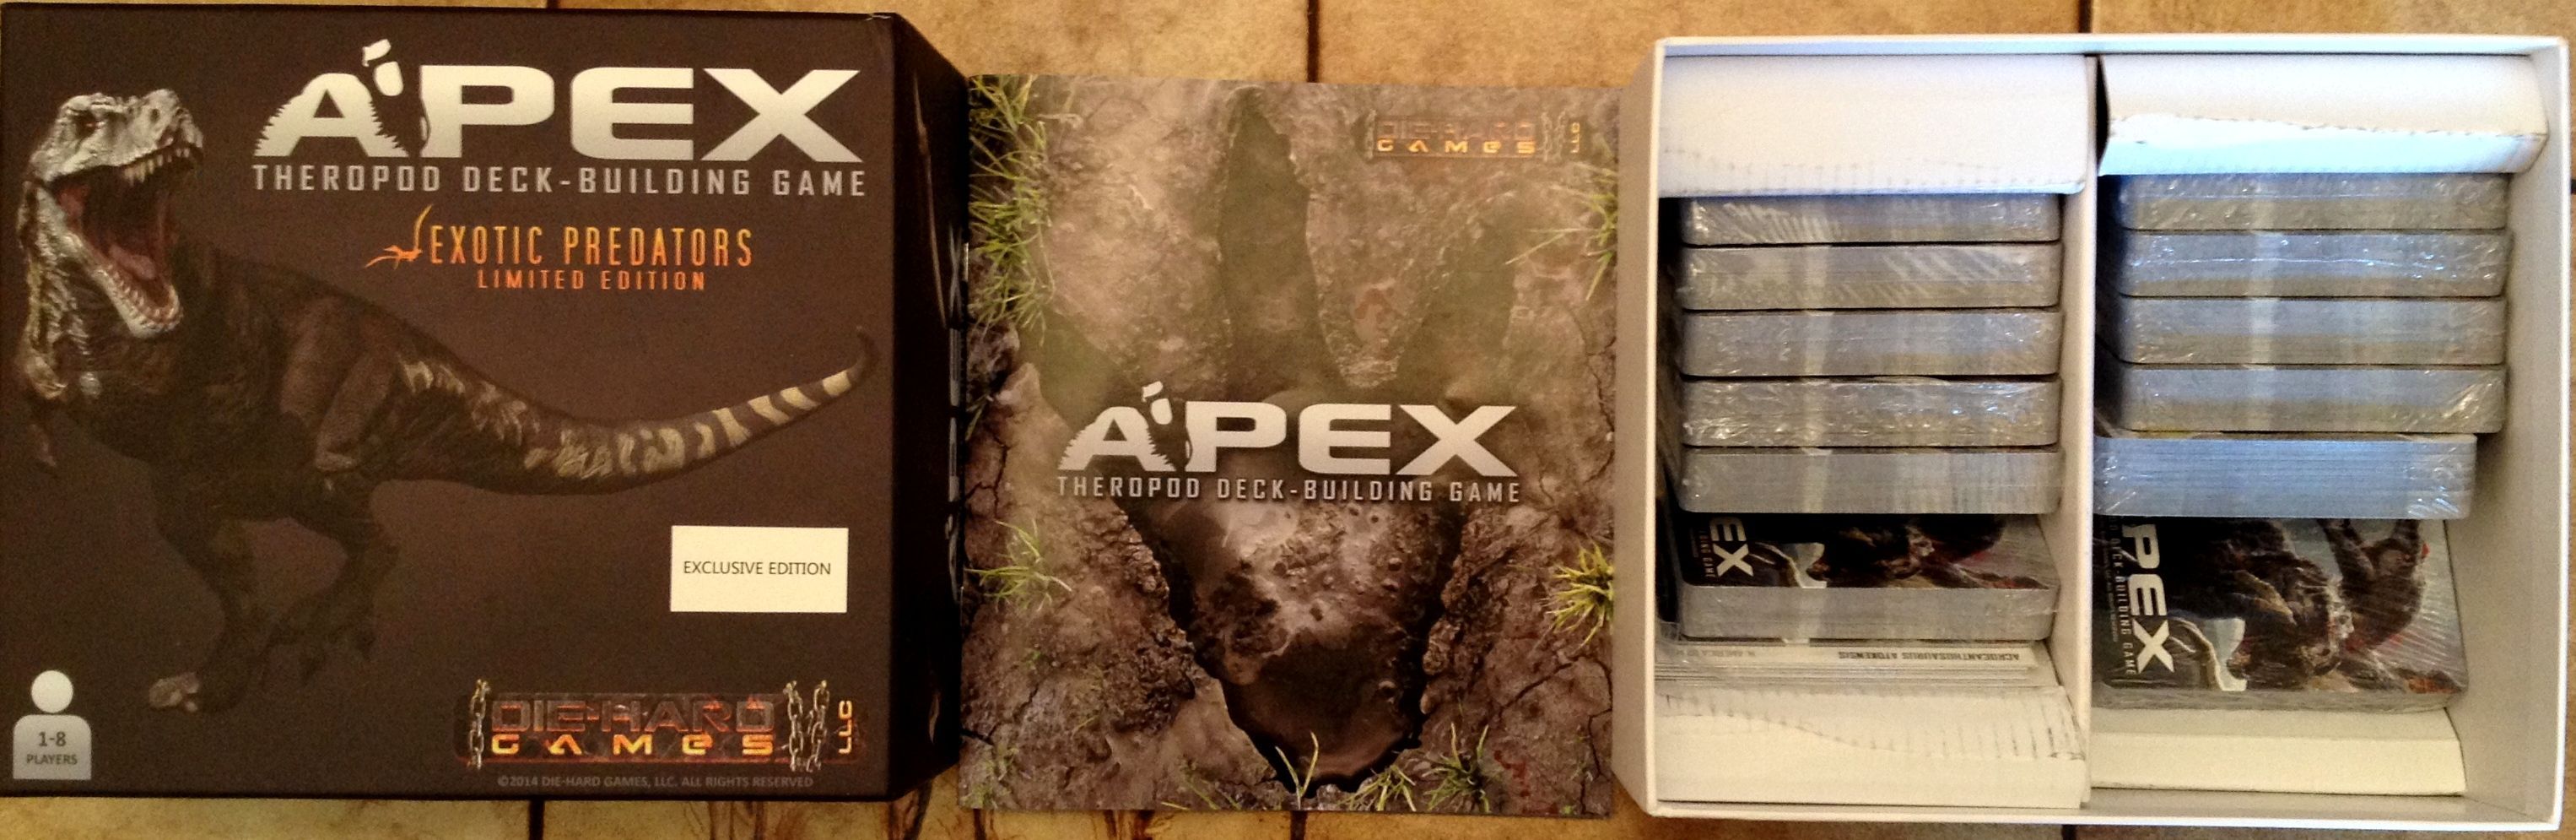 Apex Theropod Deck-Building Game: Exotic Predators